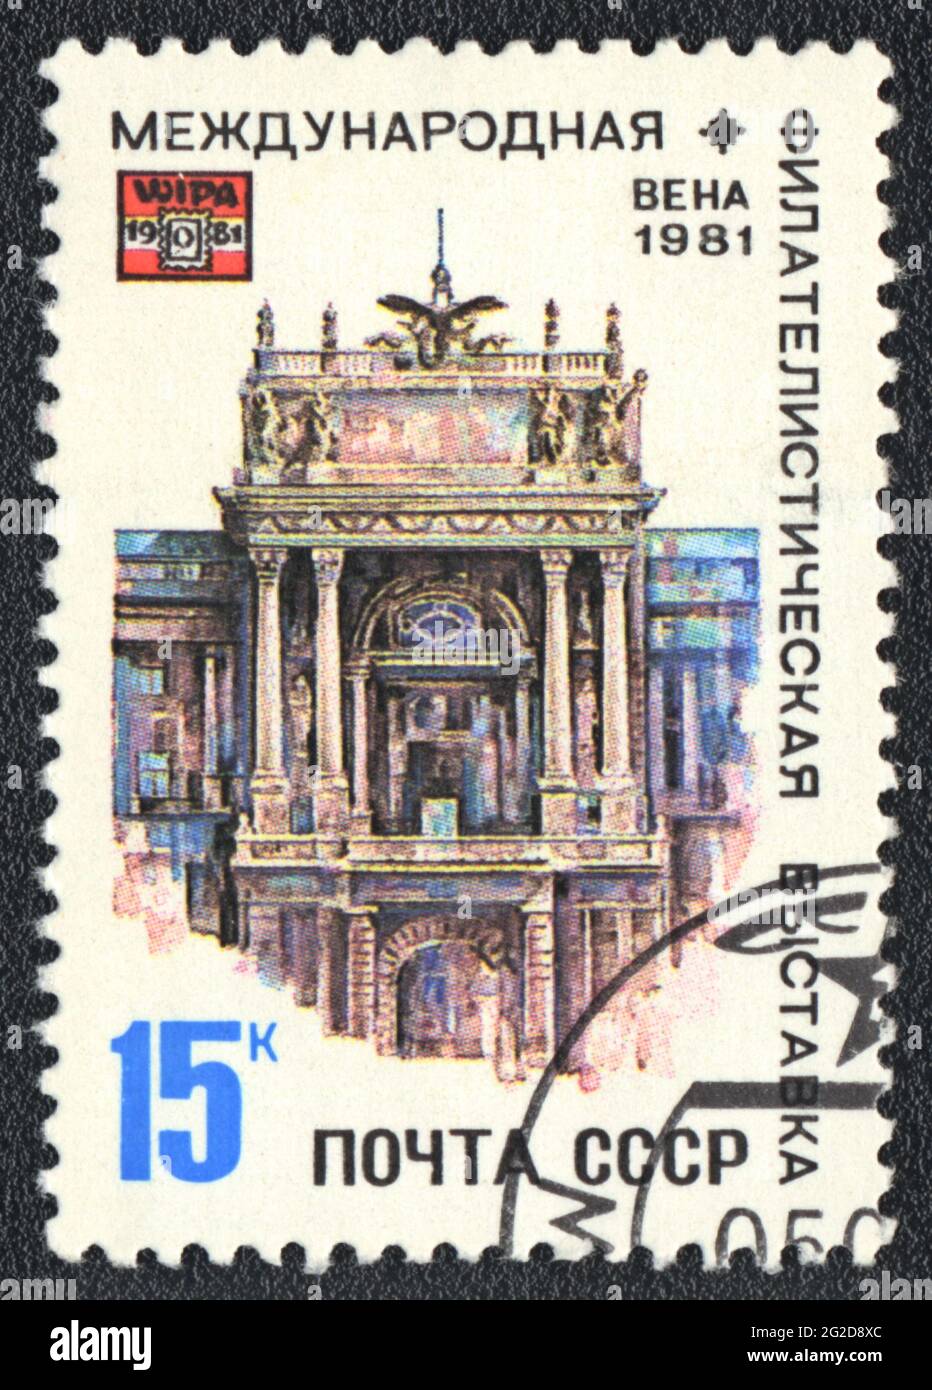 Un timbre imprimé en URSS montre l'exposition philatélique internationale WIPA à Vienne 1981, URSS 1981 Banque D'Images